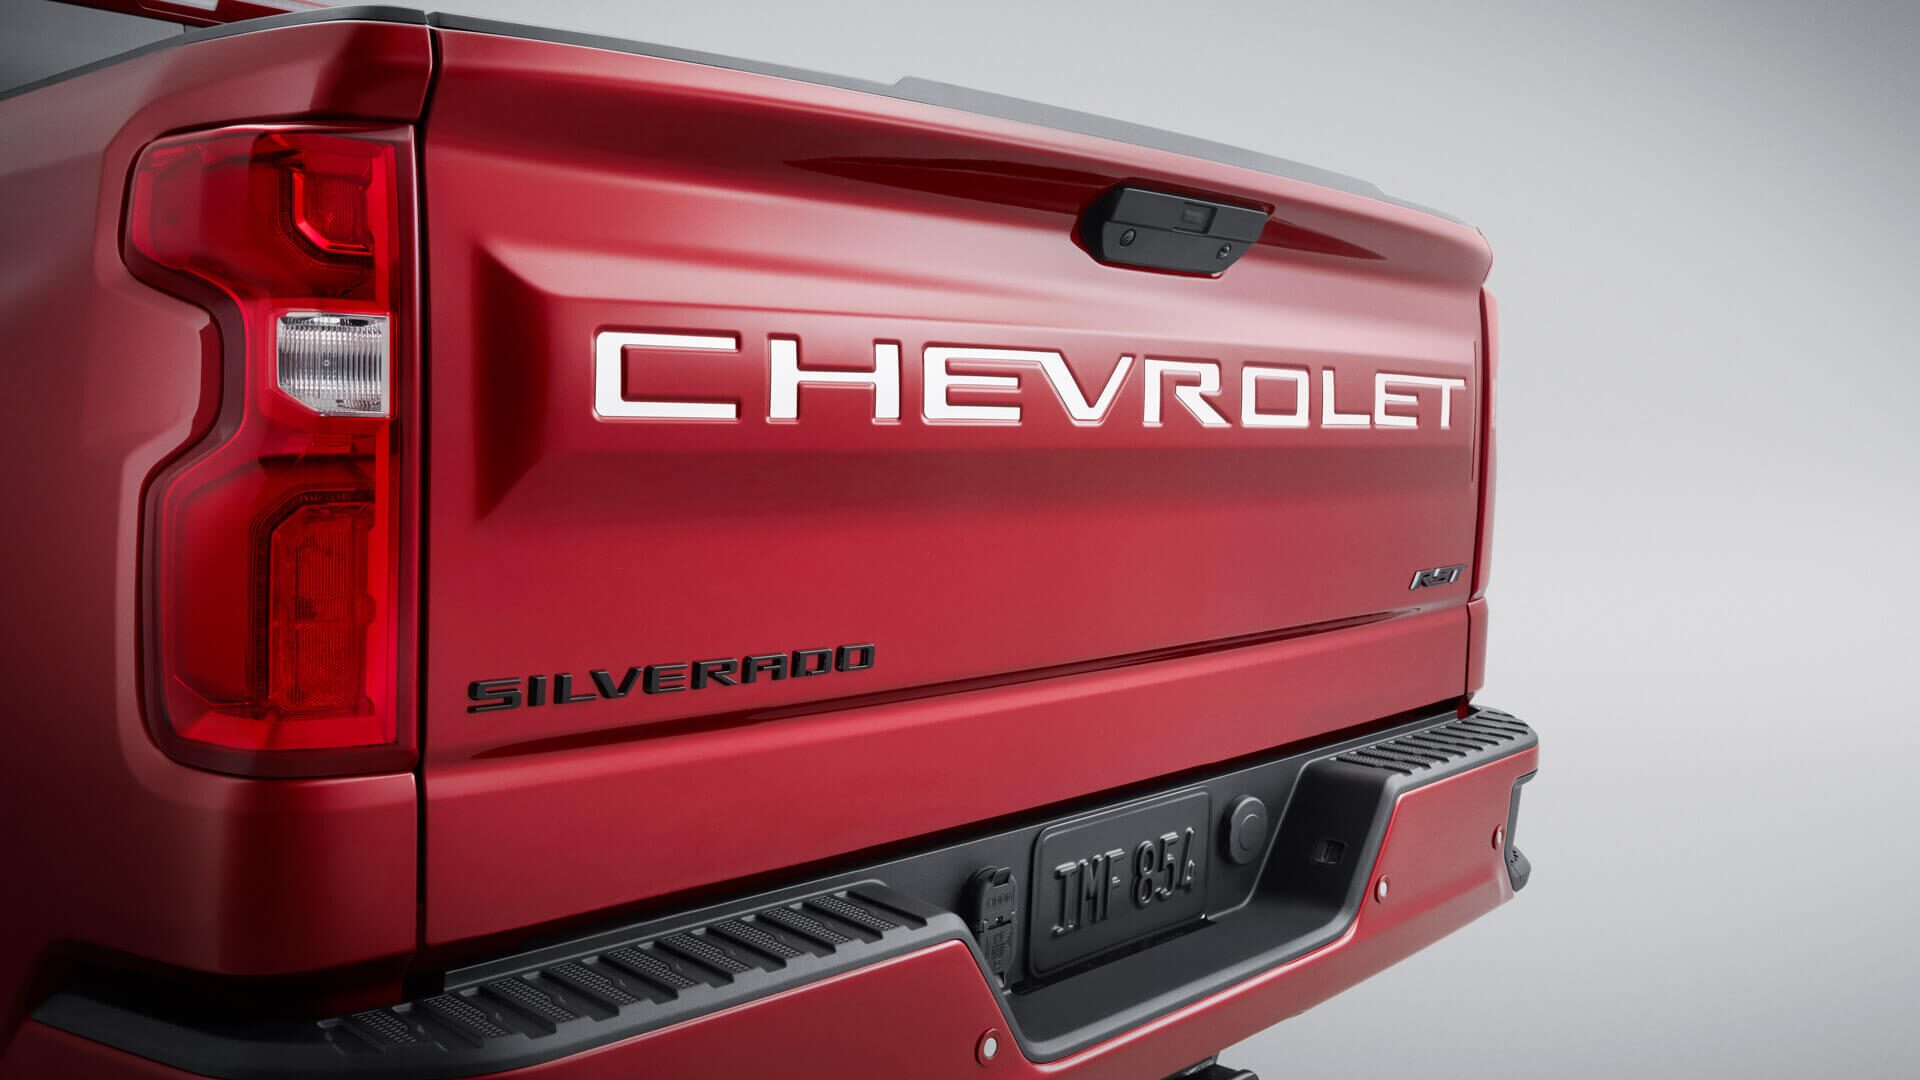 El logo Chevrolet para el portón trasero resalta el aspecto robusto de tu camioneta Silverado